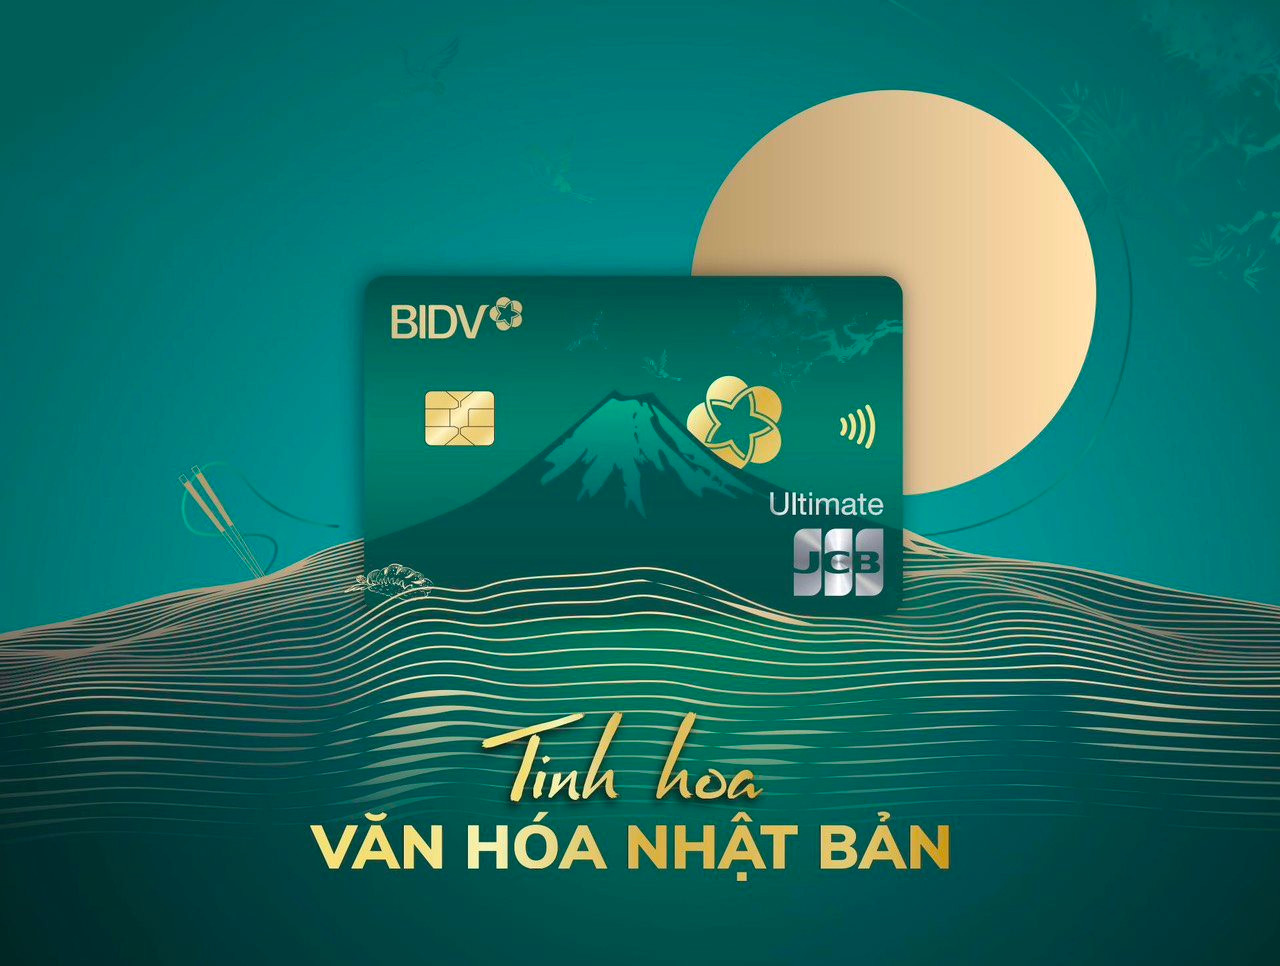 Thẻ tín dụng BIDV JCB Ultimate - Top 50 sản phẩm dịch vụ tin dùng Việt Nam 2023 - Ảnh 2.